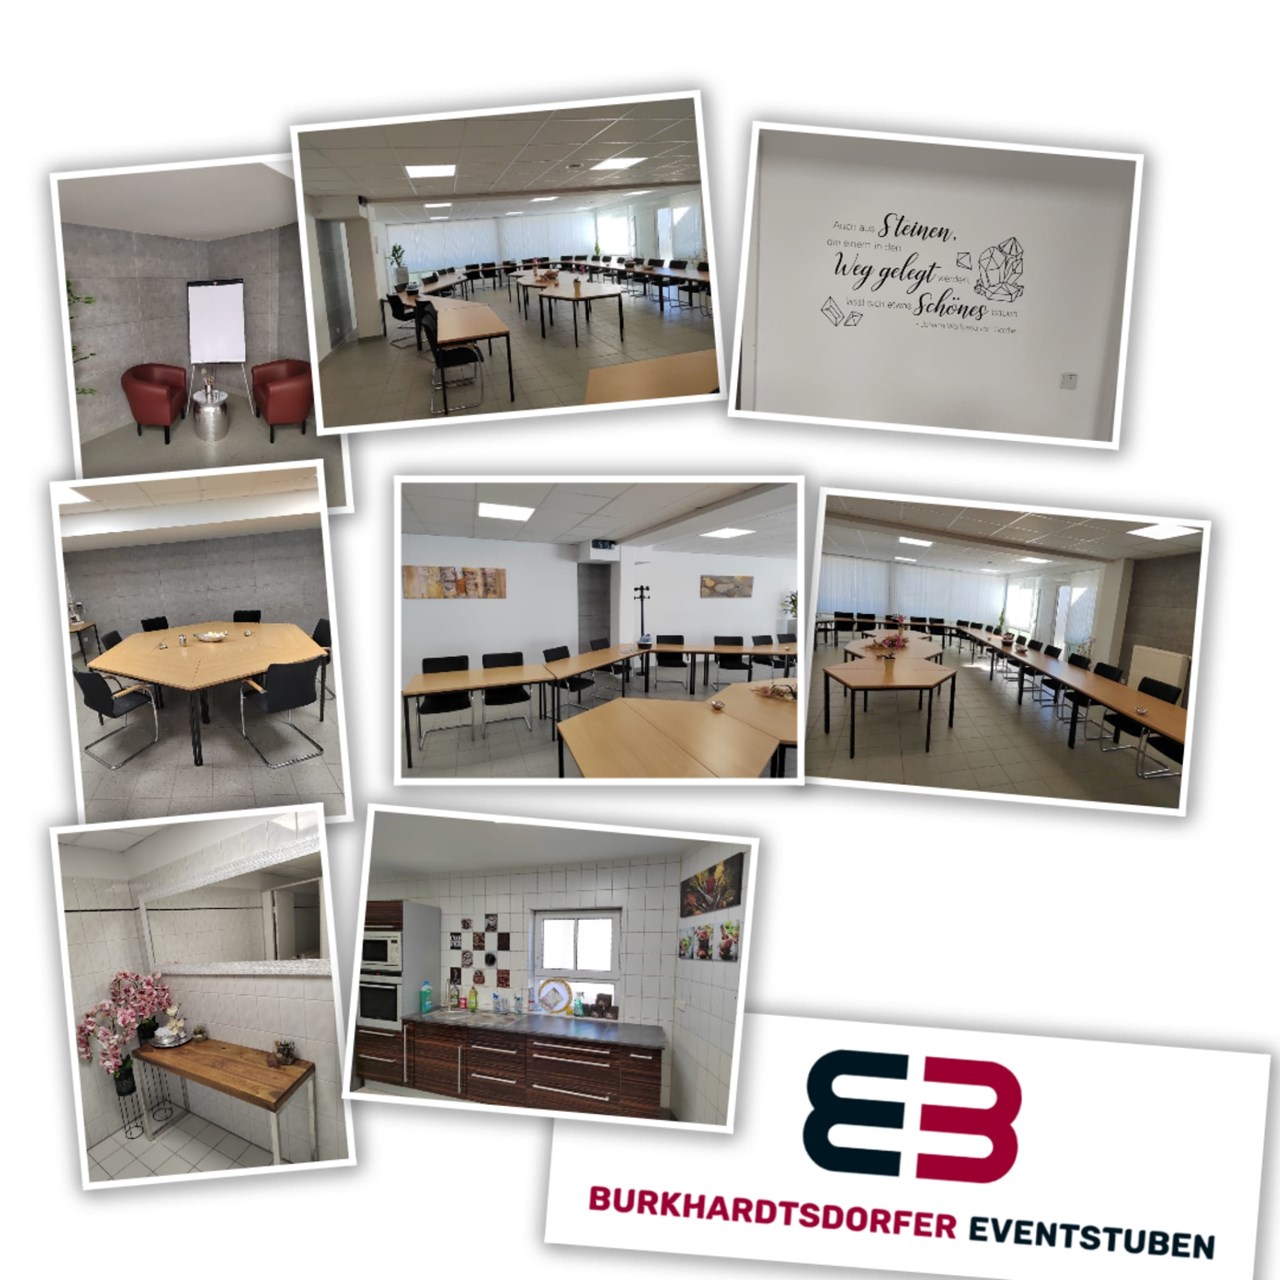 Burkhardtsdorfer Eventstuben Hier finden sie all unsere Räume mit Beschreibungen Seminarraum